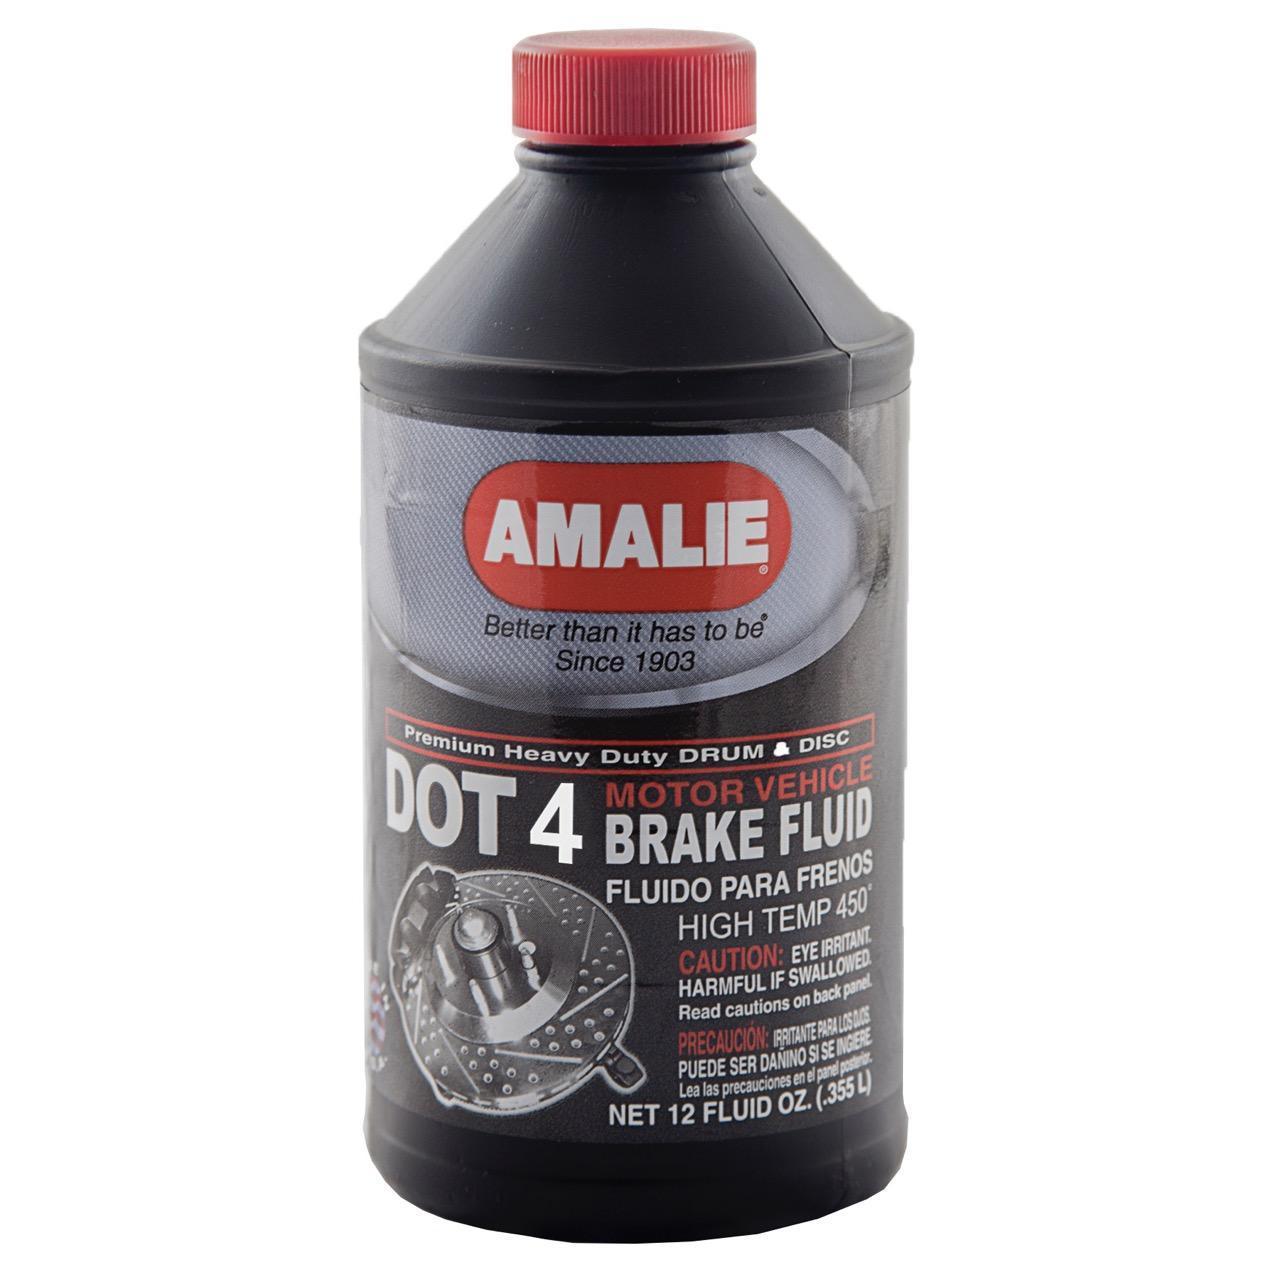 AMALIE DOT 4 BRAKE FLUID - Amalie